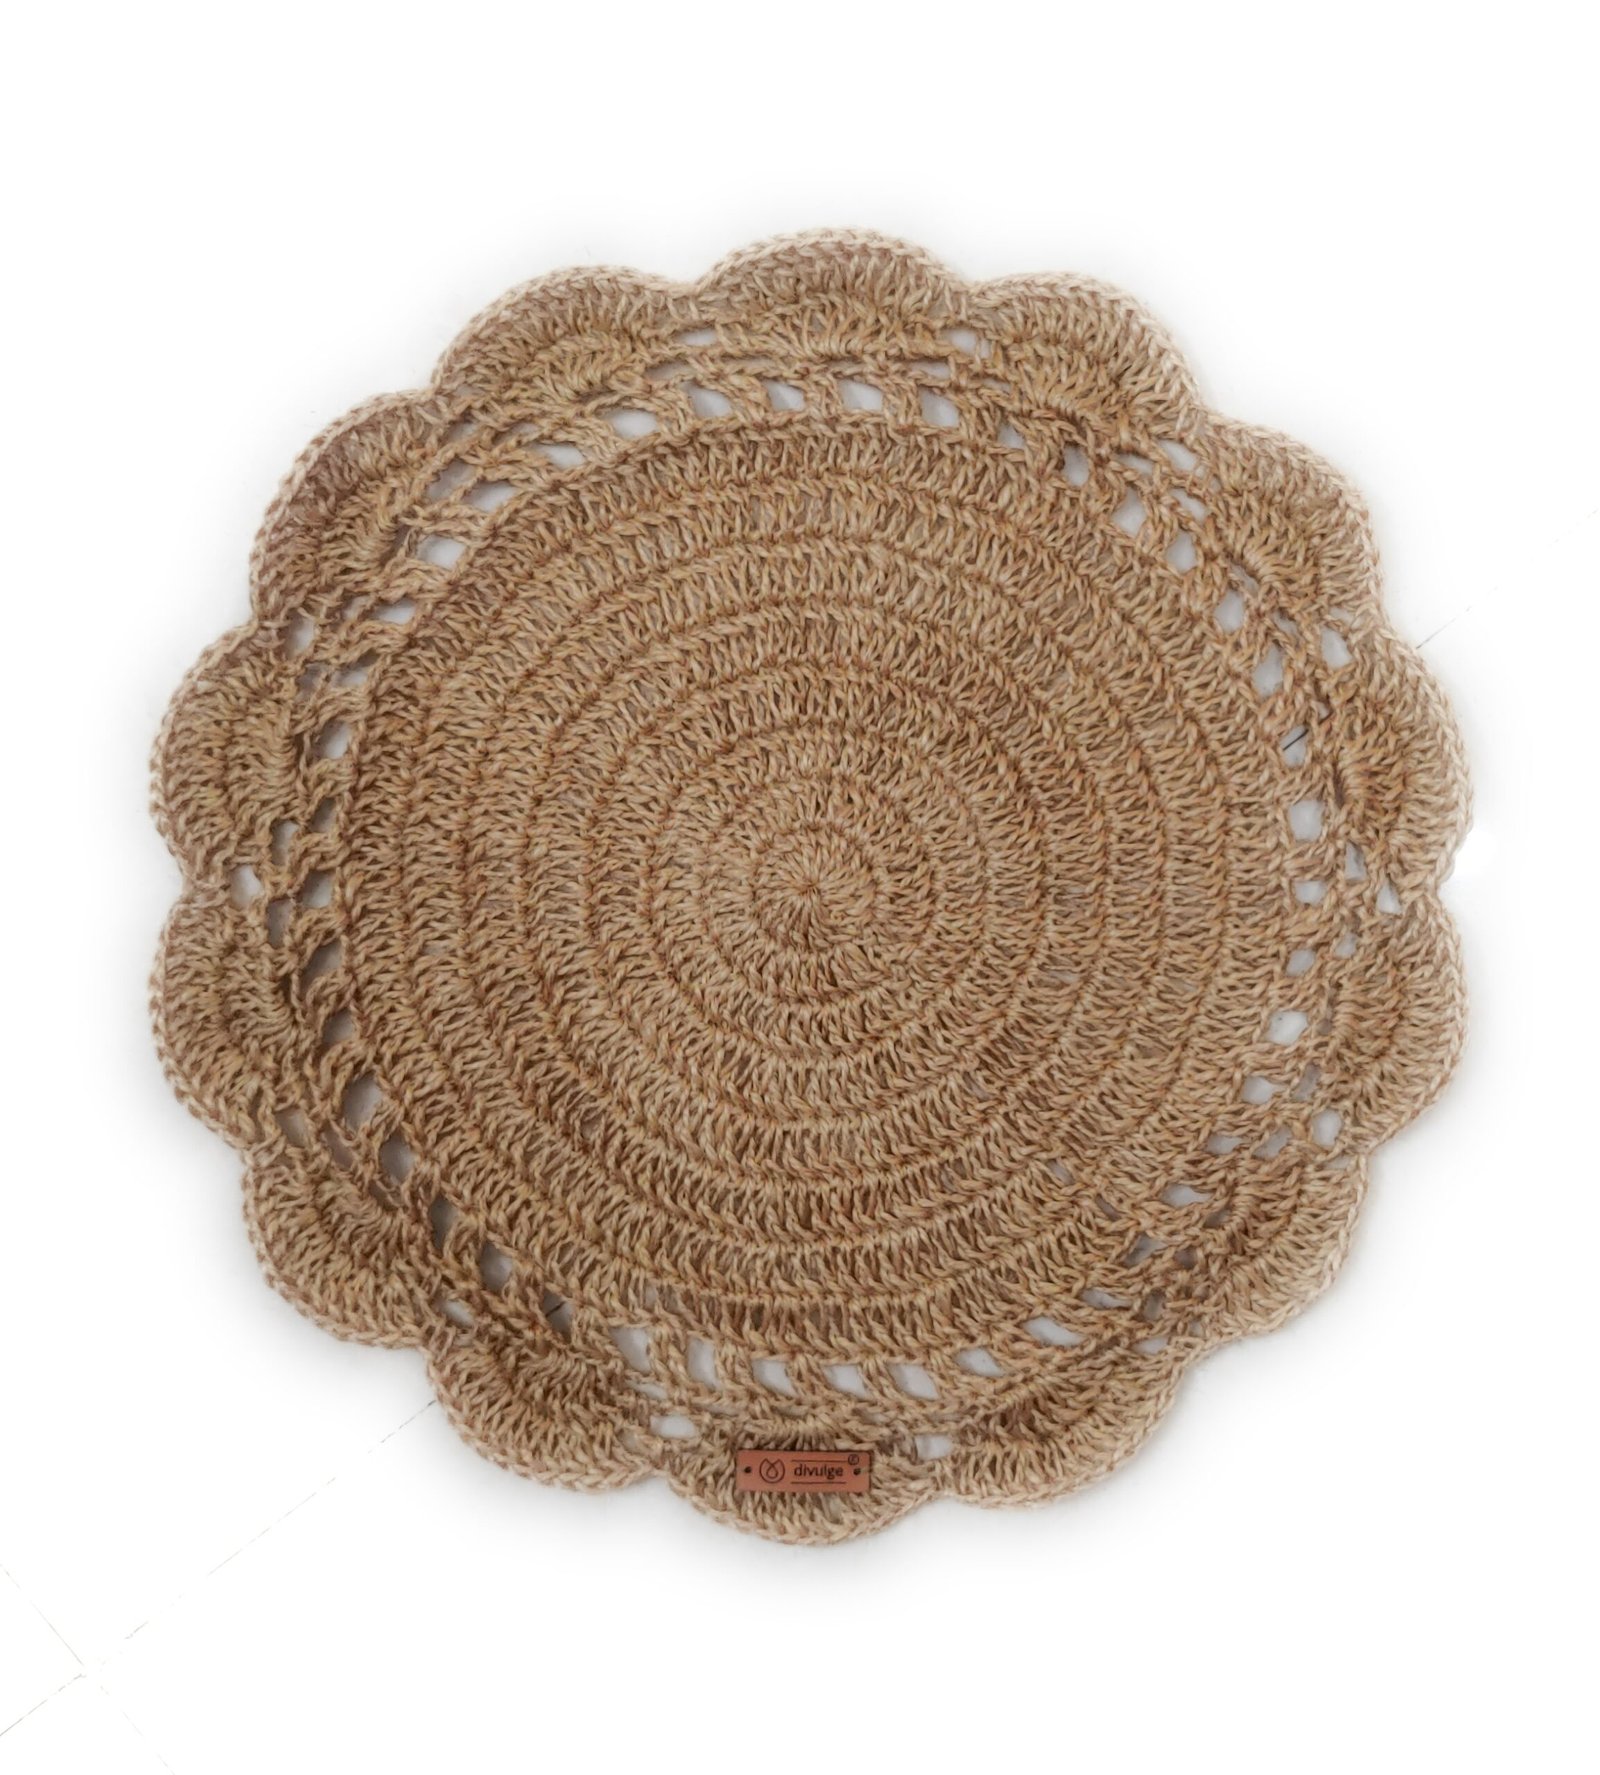 Divulge crochet roundtable mat